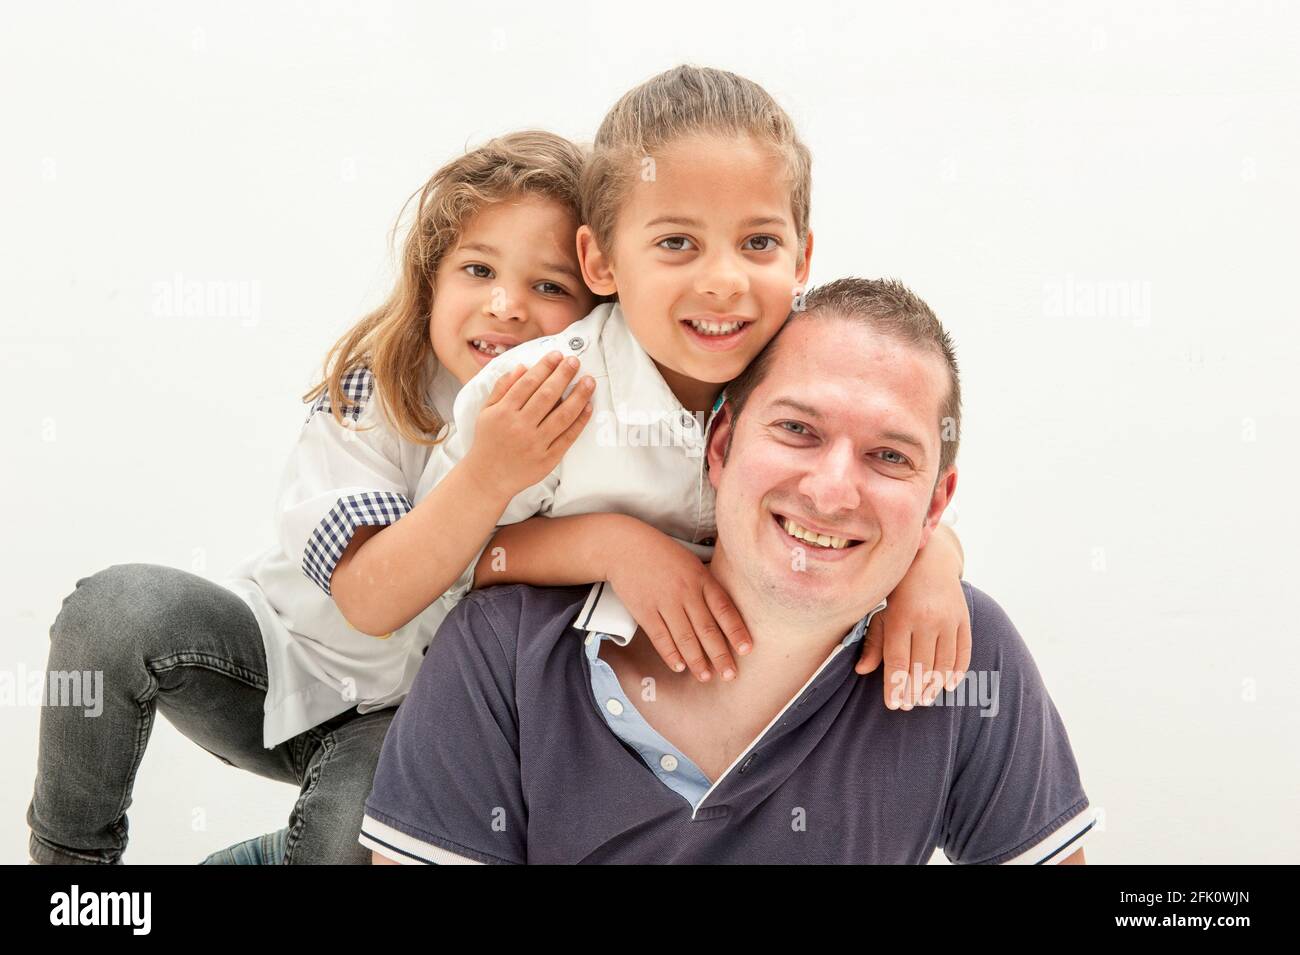 Glücklicher junger kaukasischer Vater, der Spaß mit kleinen multirassischen Kindern hat glücklicher Vater spielt in lustigen Aktivitäten mit kleinen multiethnischen Kindern. Stockfoto